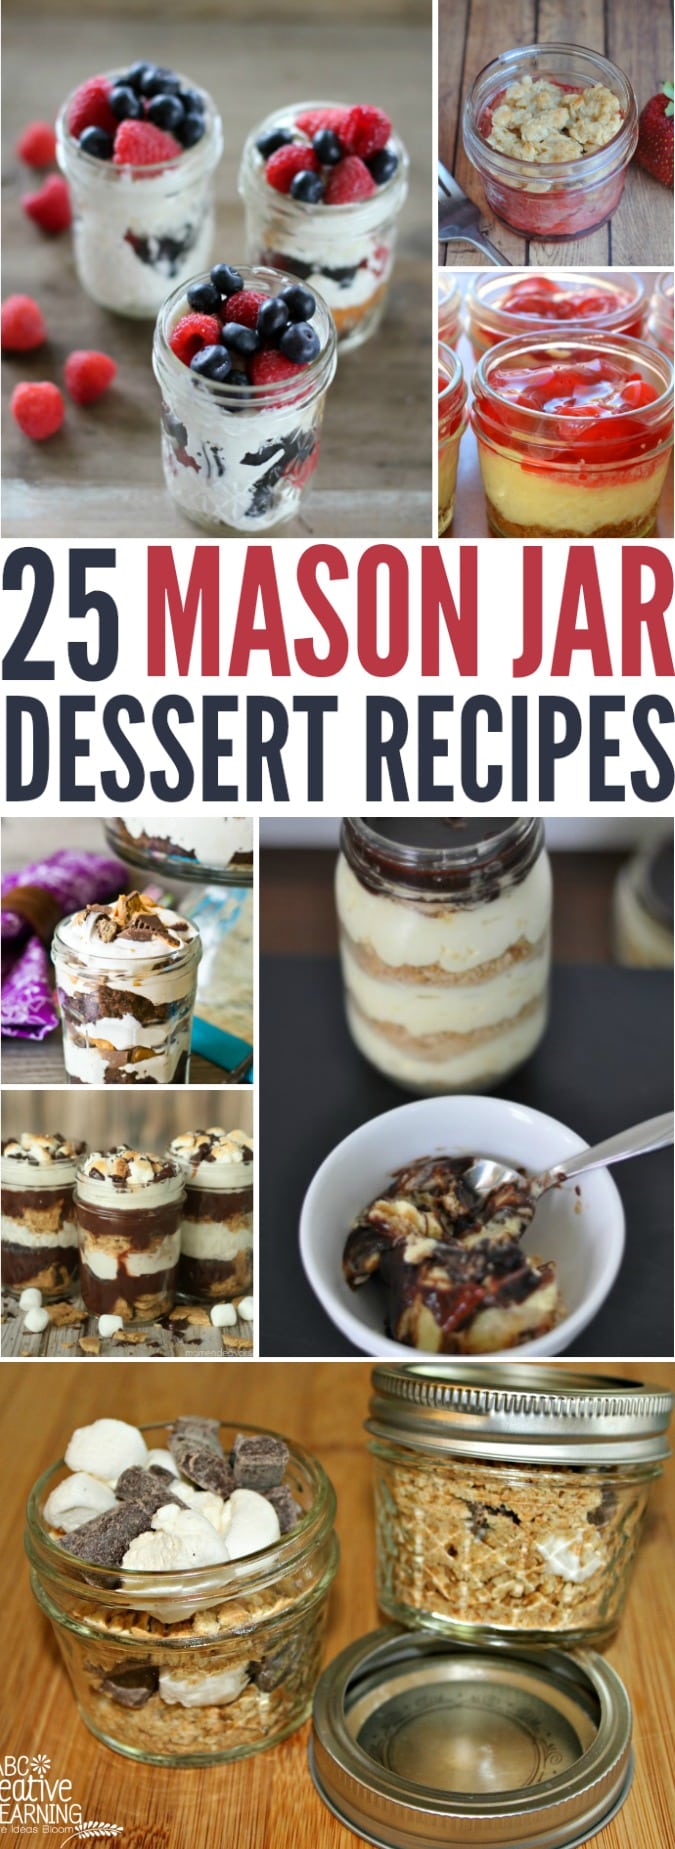 25 Mason Jar Dessert Recipes - simplytodaylife.com